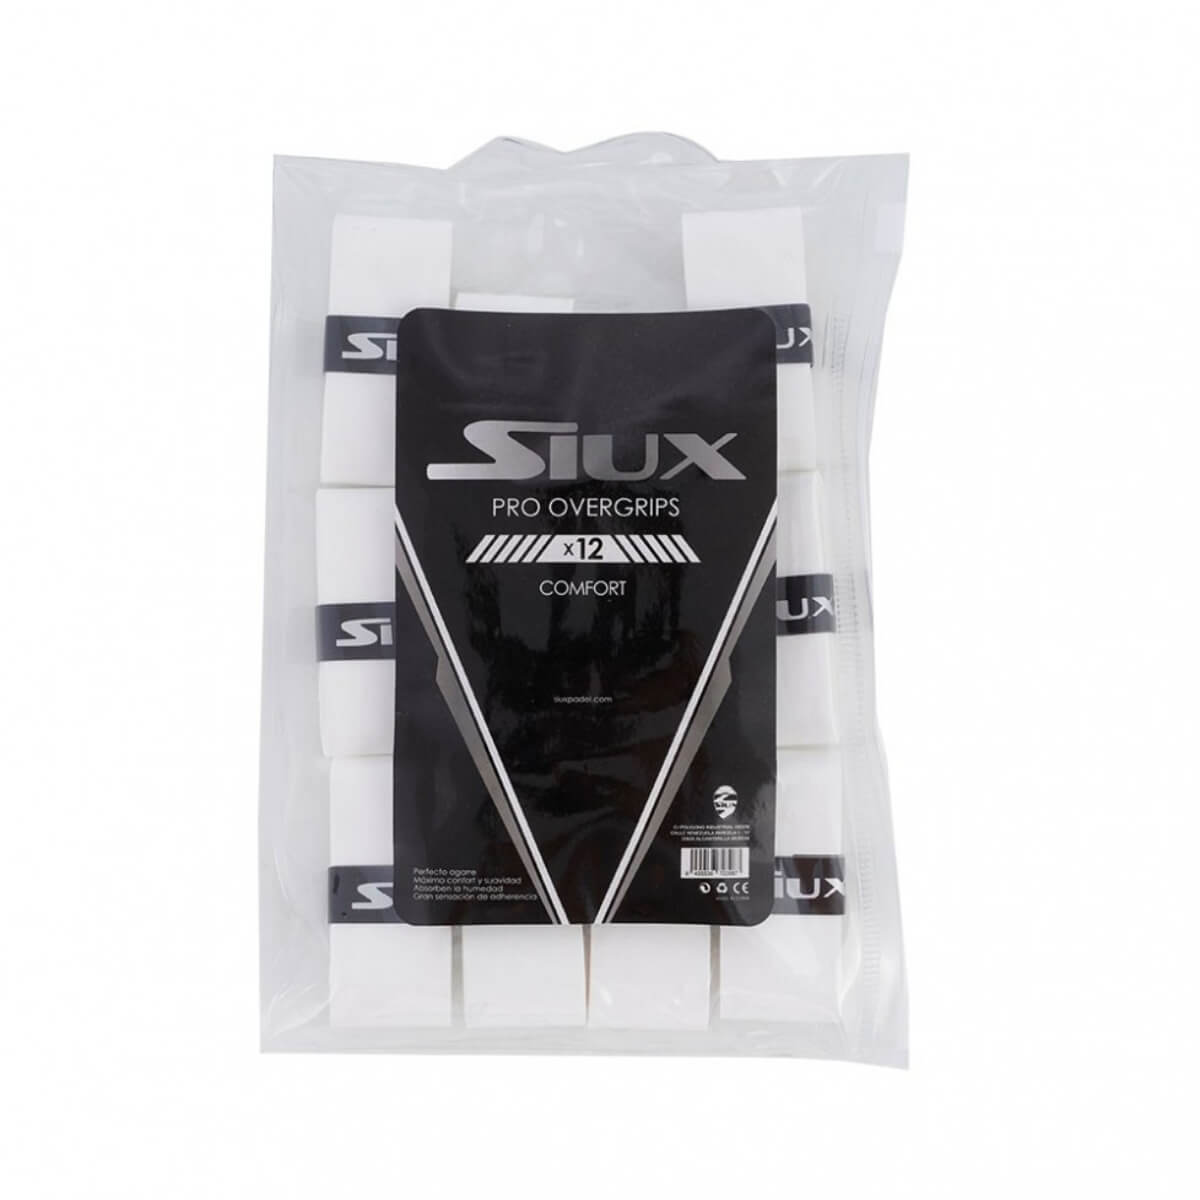 Siux Pro Overgrip Comfort 12 stuks